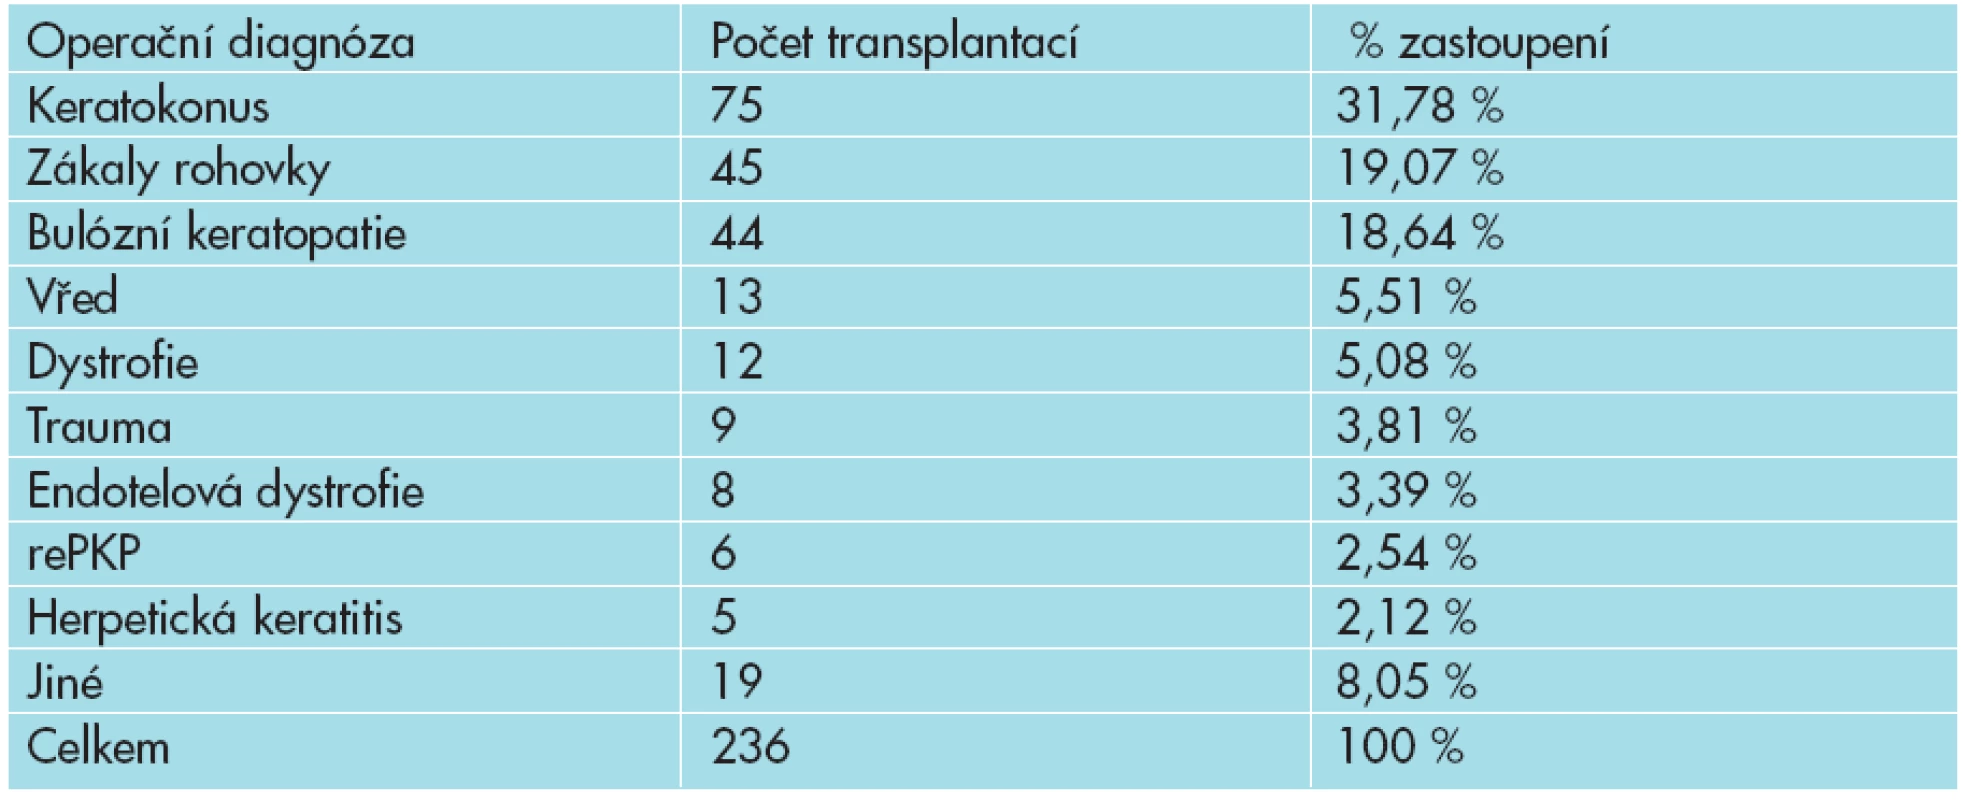 Přehled operačních diagnóz u perforujících transplantací rohovky.